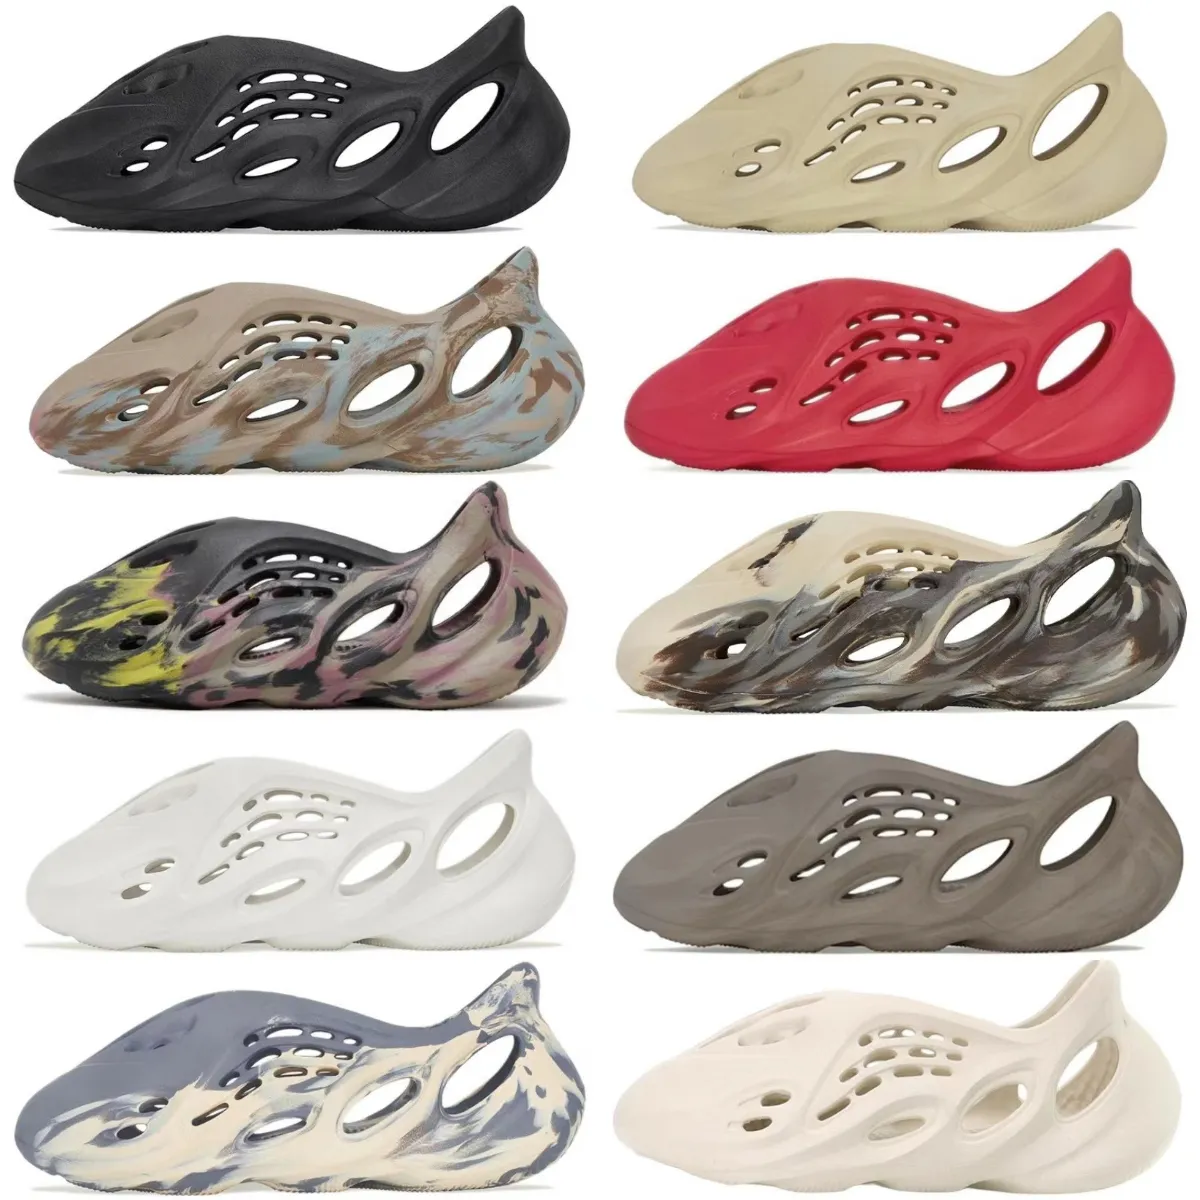 

Designer Slide Slippers Sandals foam runner Men Women Slides Sneakers Onyx Ochre Bone Glow Green Pure Desert Sand Mens Outdoor Trainers size 36-45